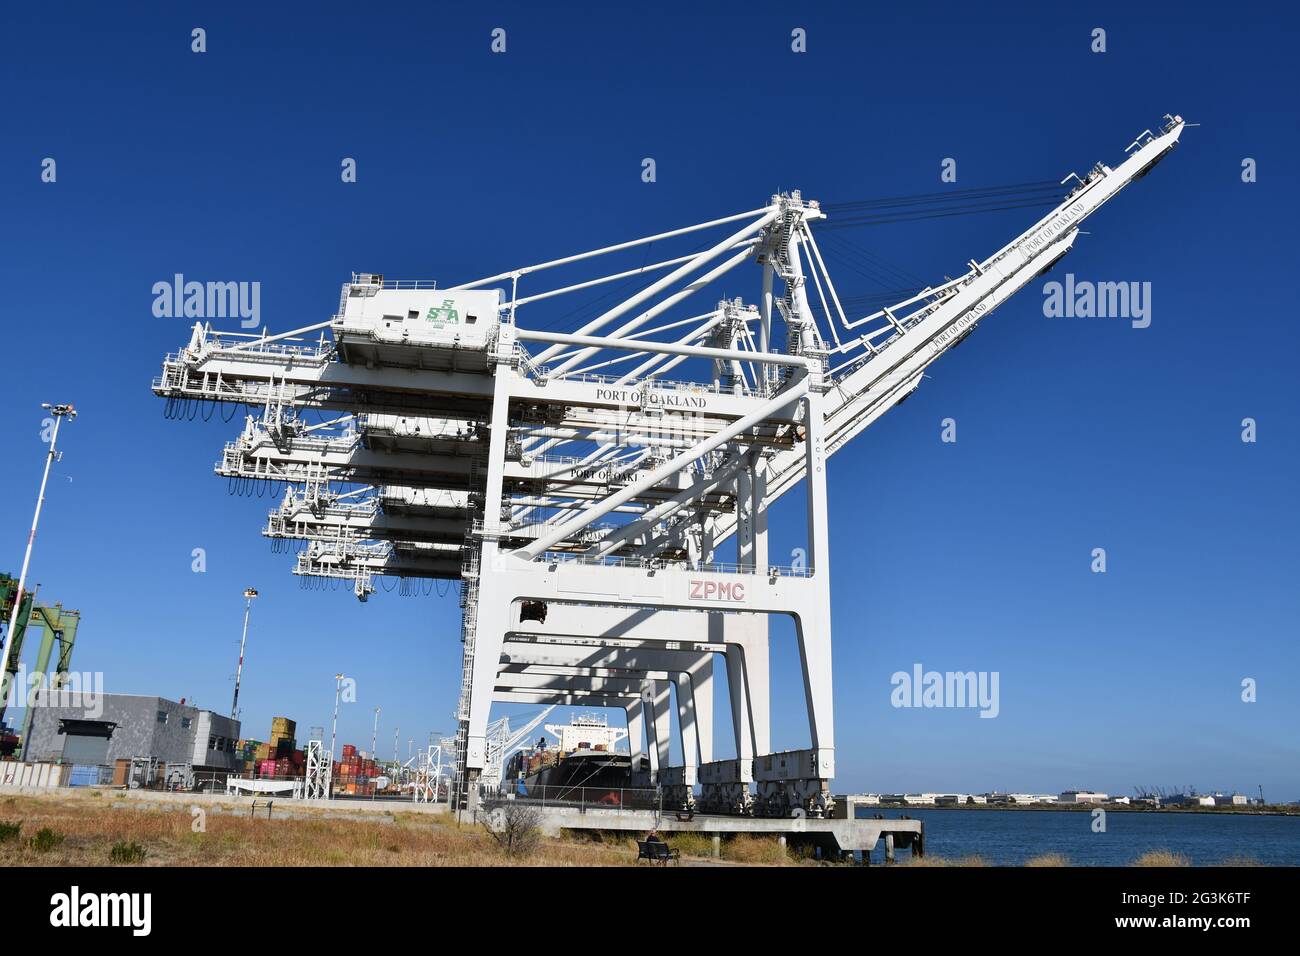 Im Hafen von Oakland, Kalifornien, einem der verkehrsreichsten globalen Güterhäfen an der Westküste, werden Container auf Schiffe verladen. Stockfoto